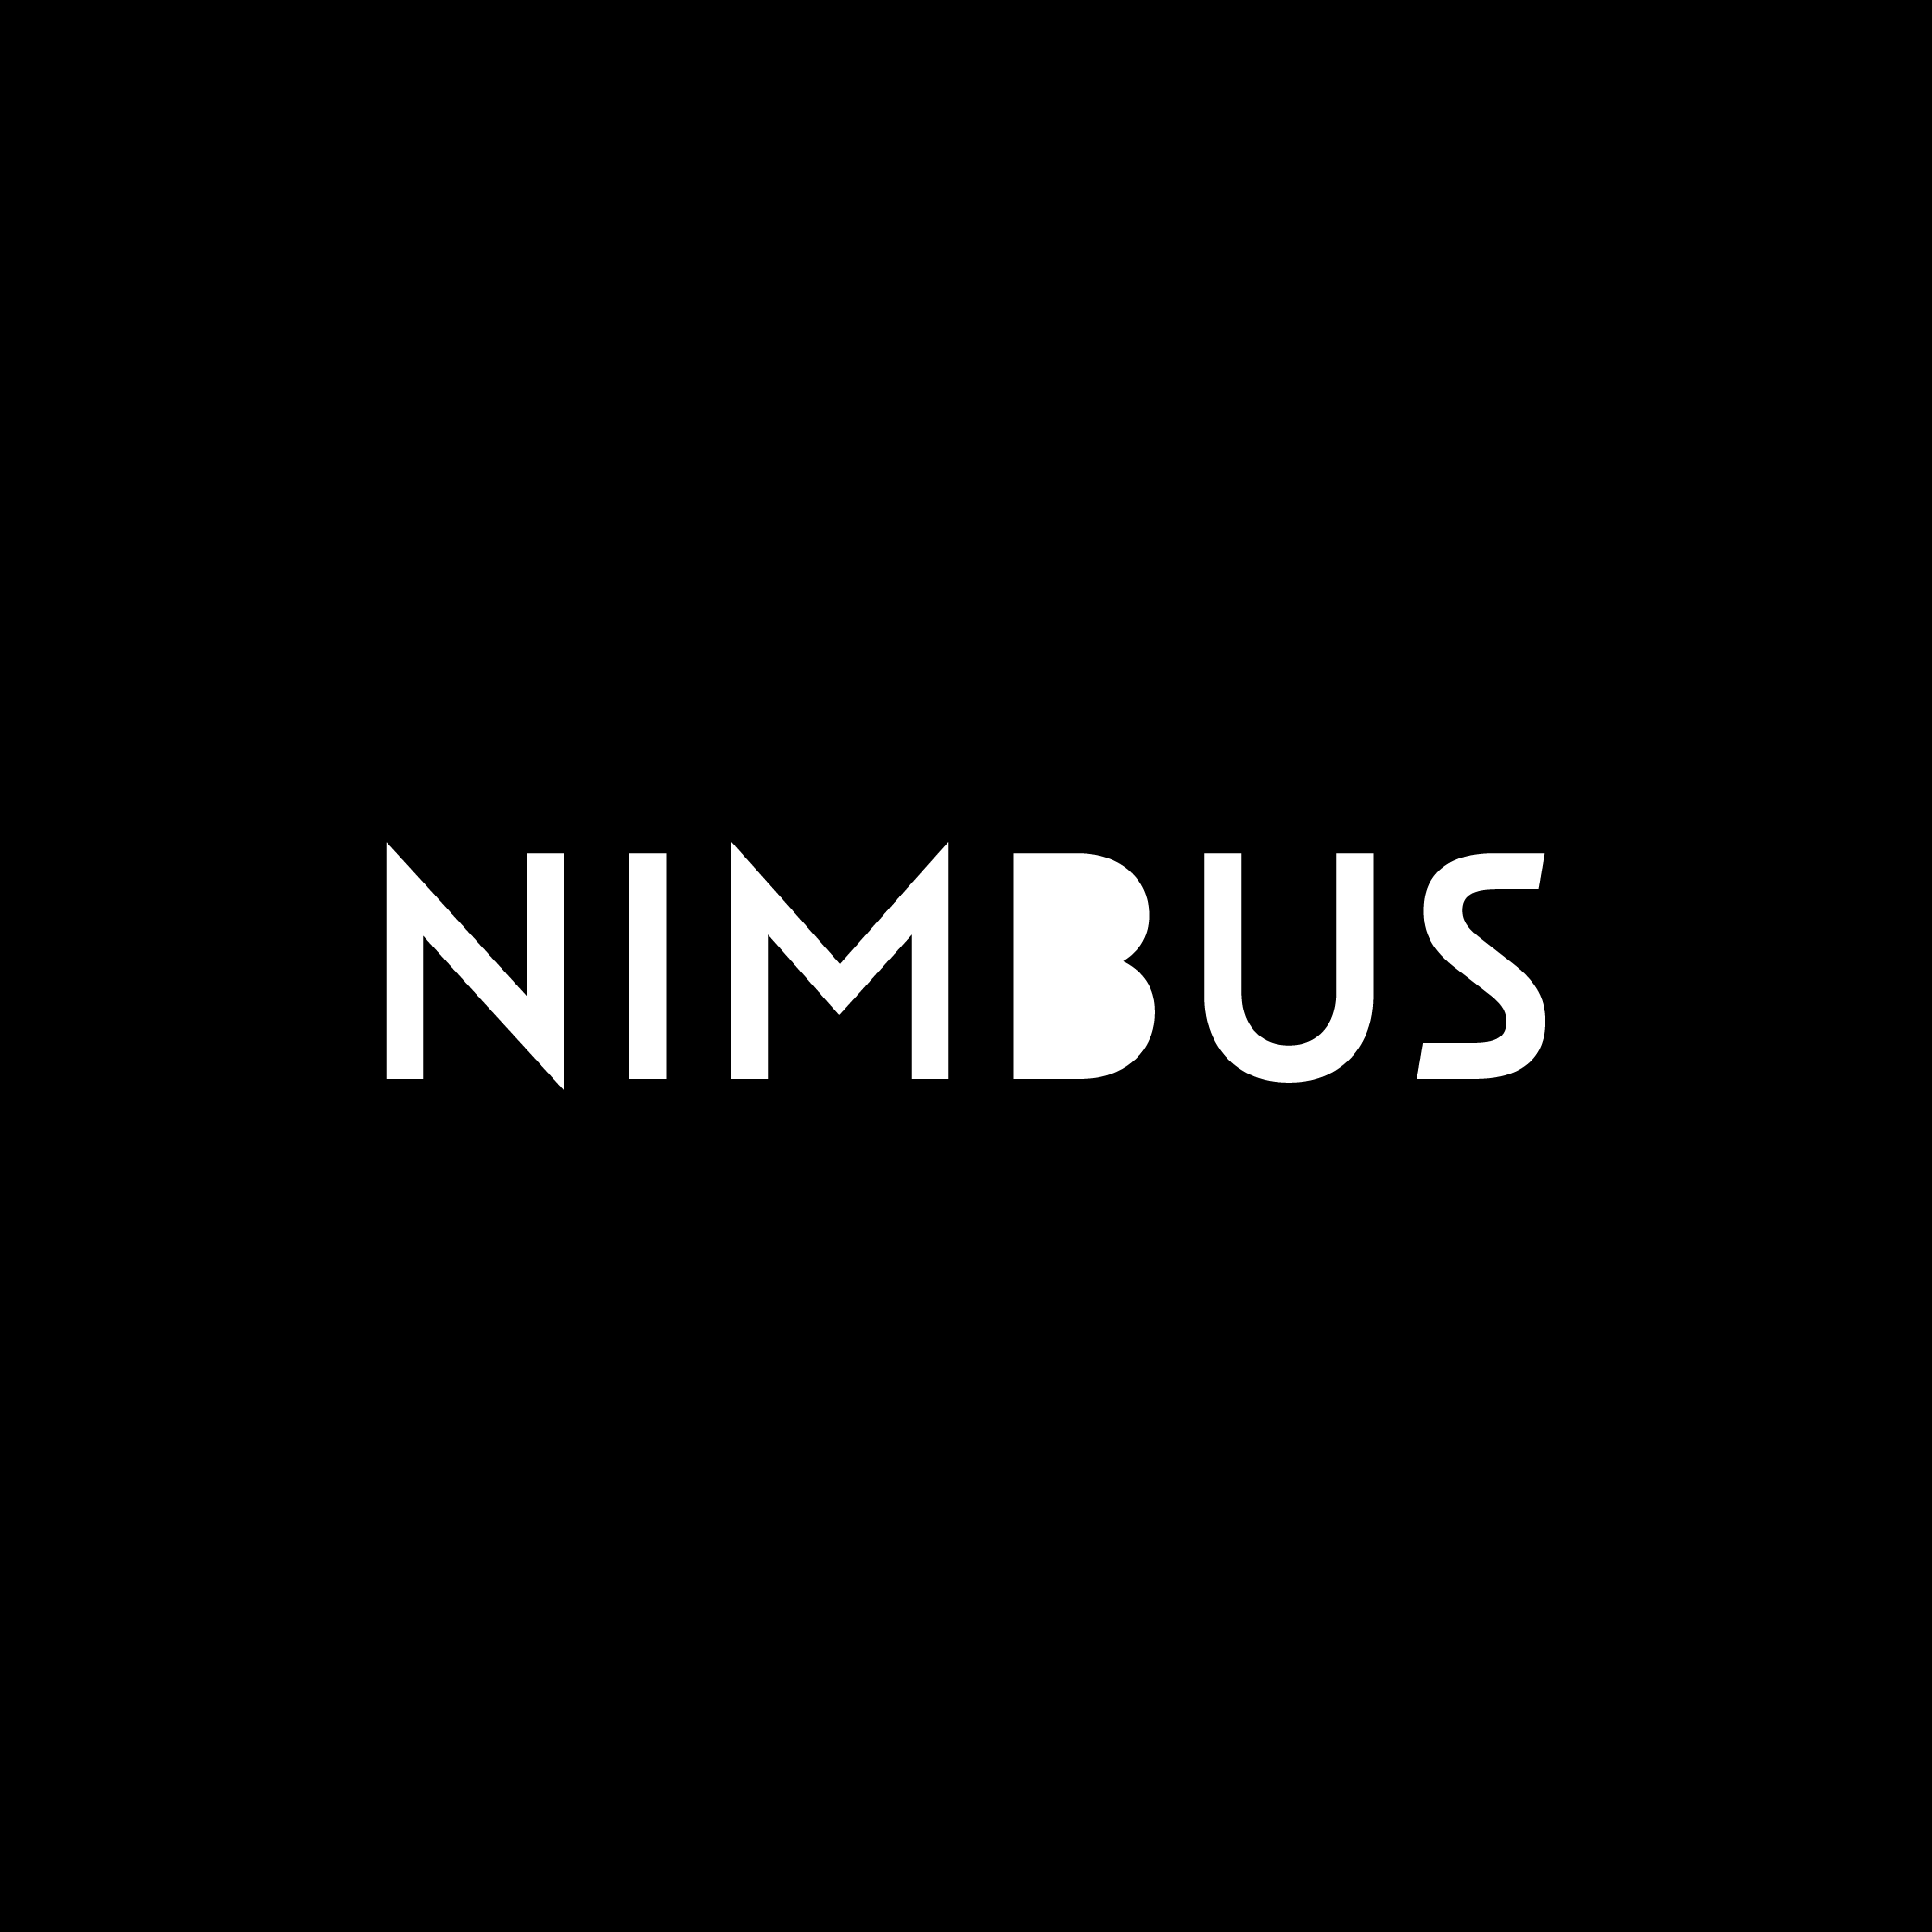 Nimbus restaurant